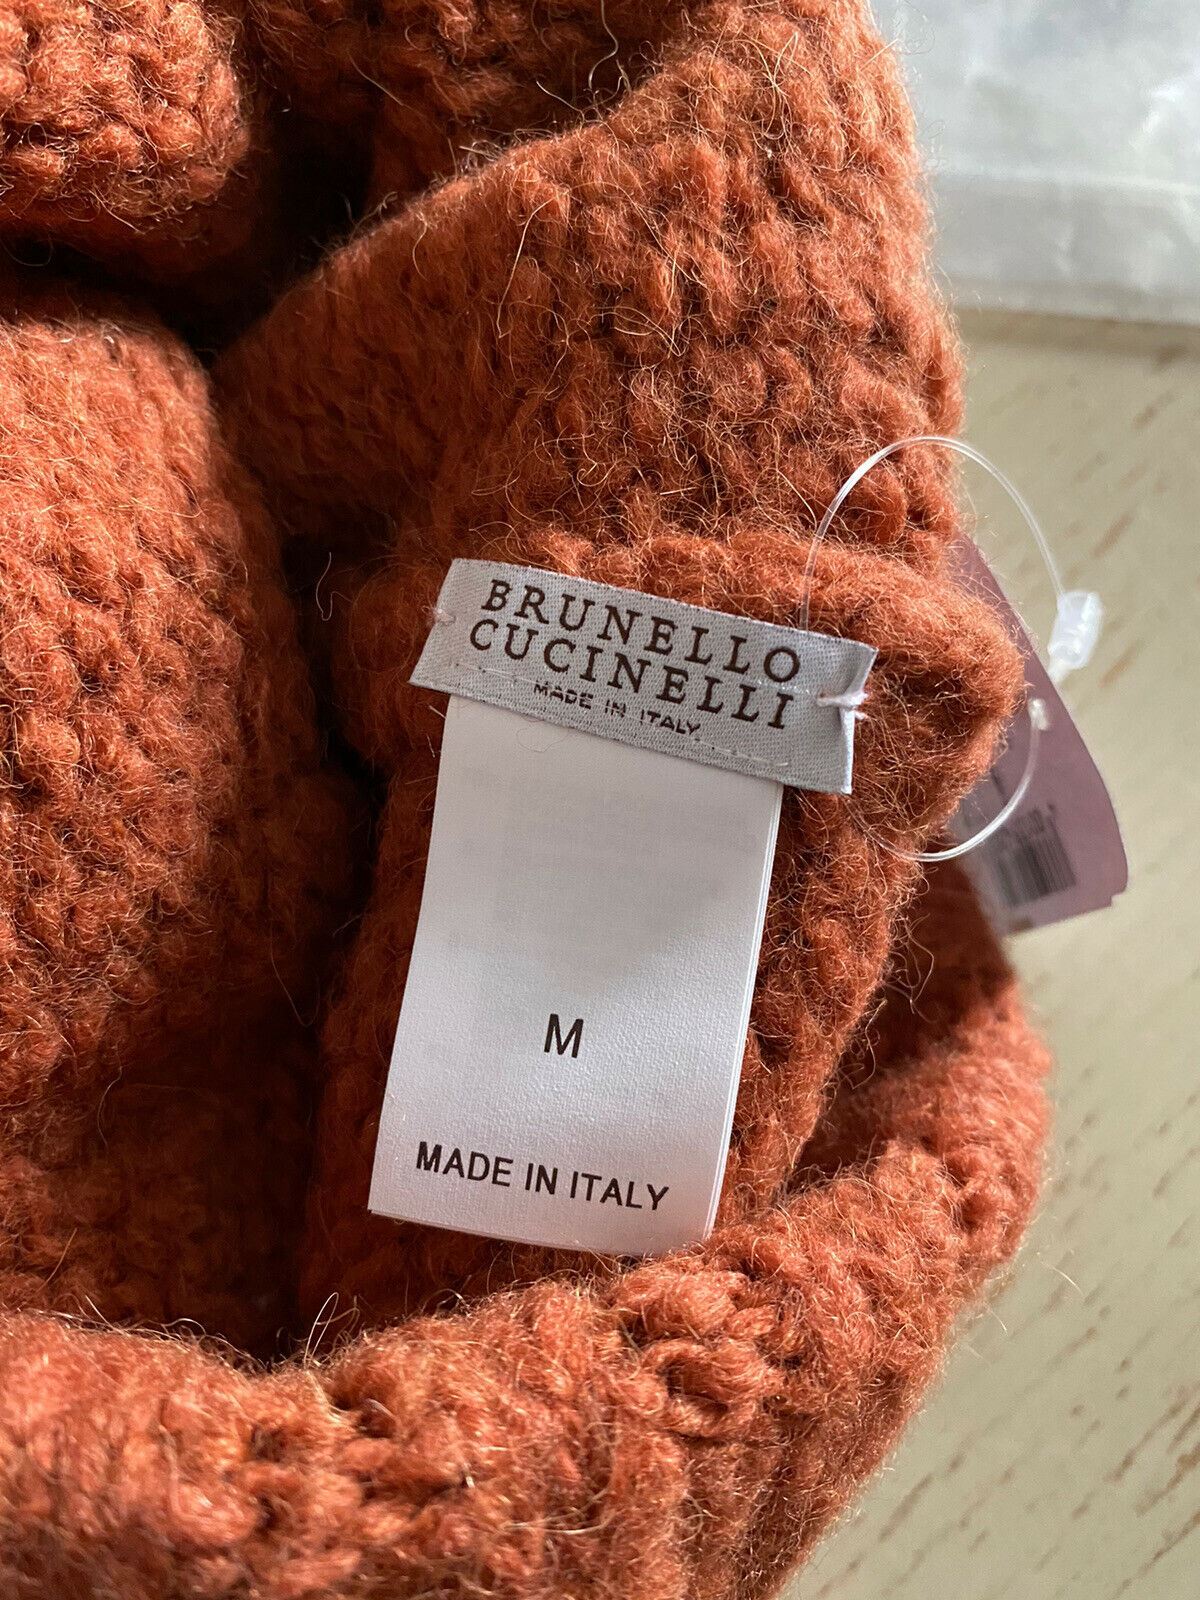 NWT Brunello Cucinelli Женская шапка-бини из смесовой шерсти из альпаки Янтарно-оранжевая шапка M Италия